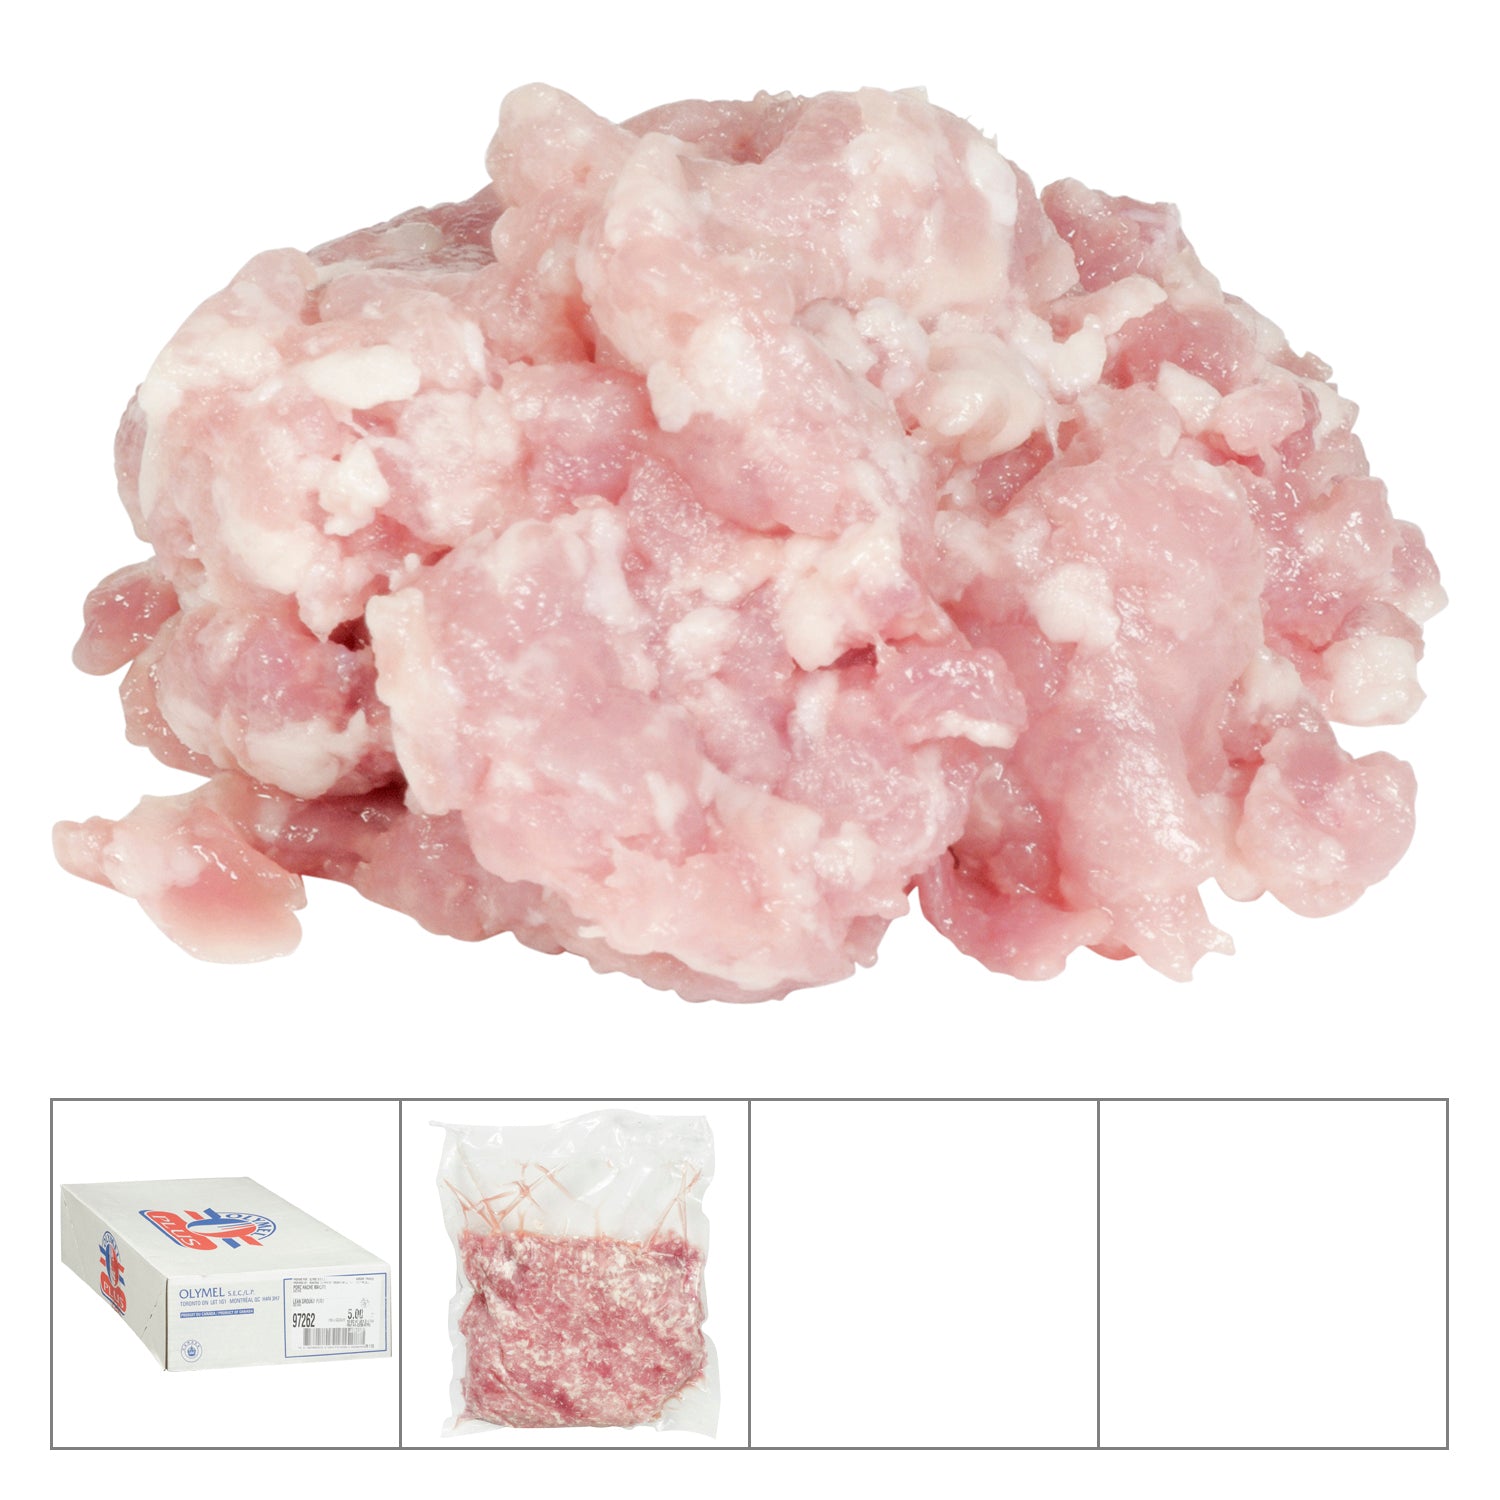 Olymel Lean Ground Pork 2x2.5kg [$8.59/kg] [$3.90/lb]